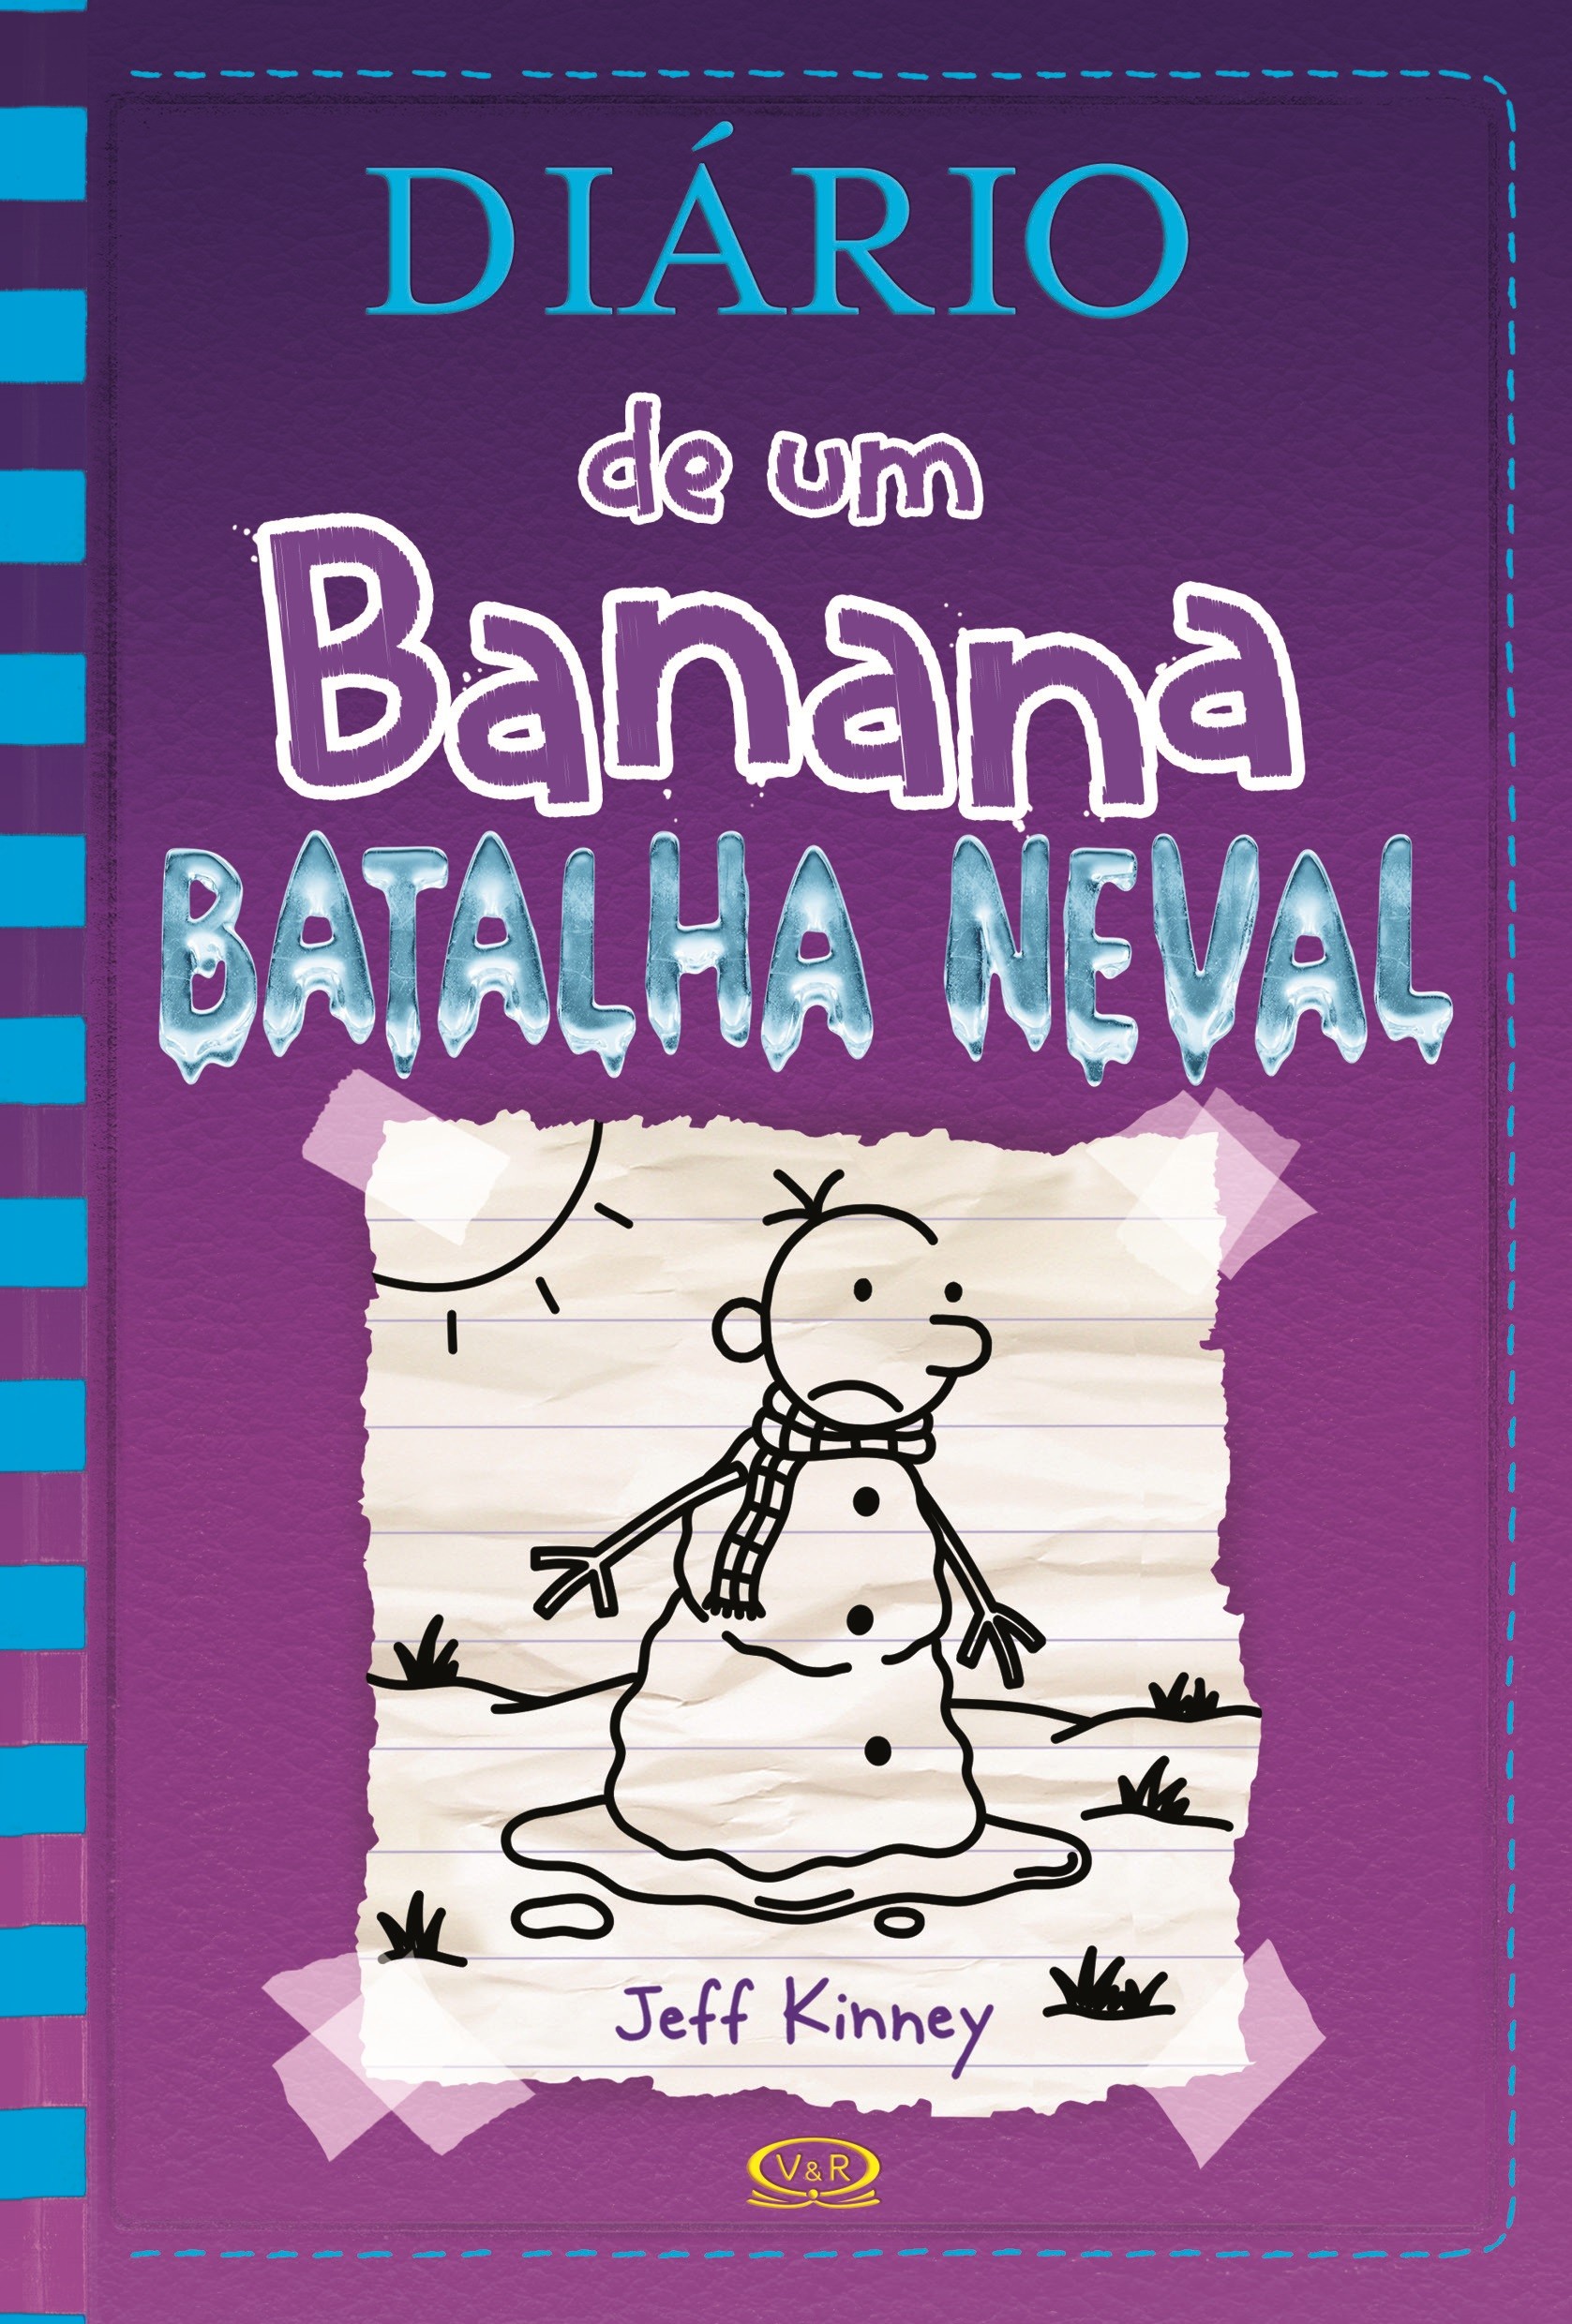 Diário de um Banana - Vol. 13: Batalha Neval